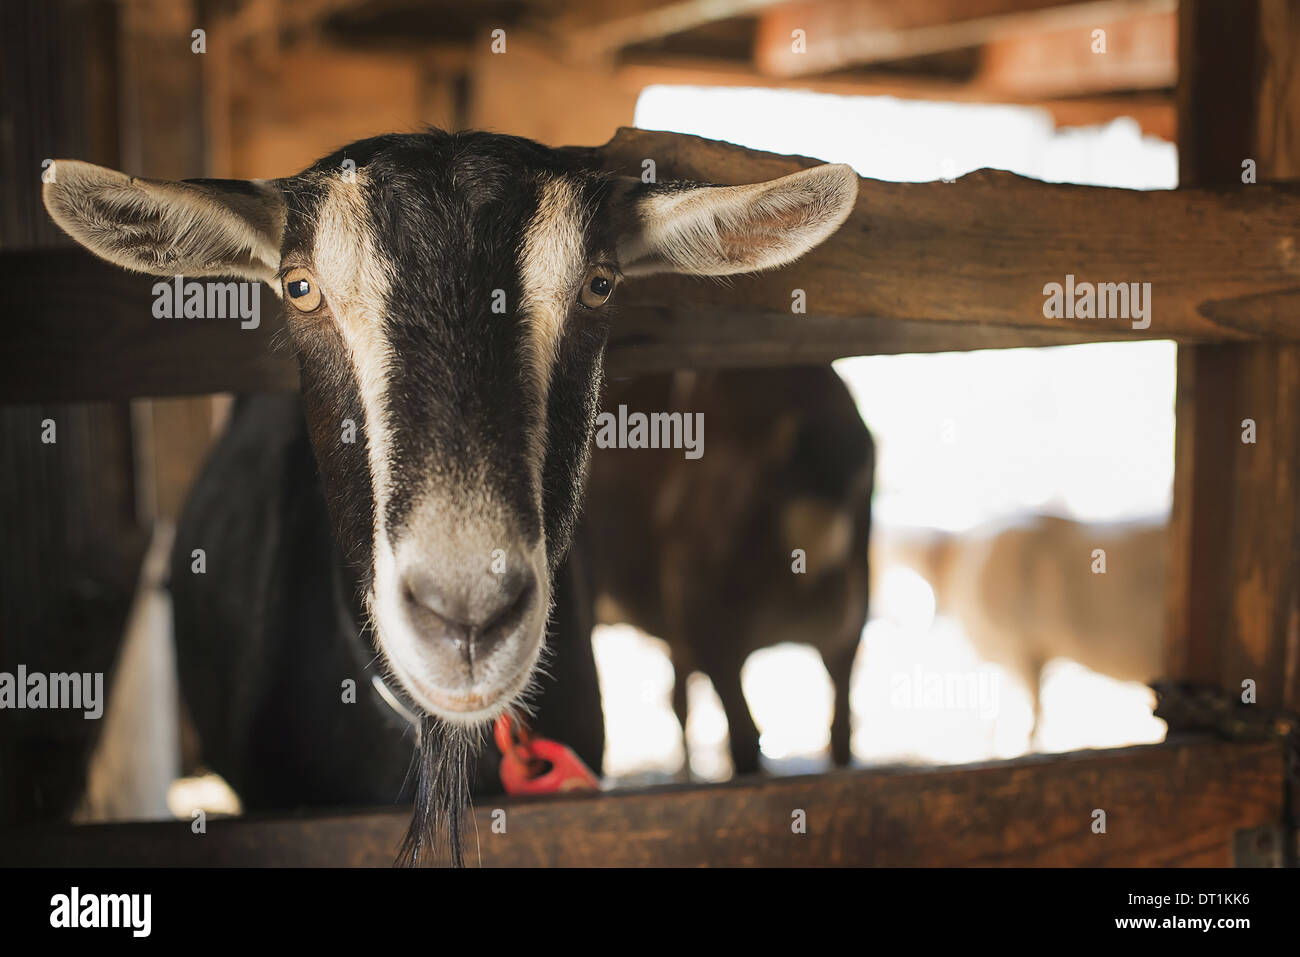 A farm animal on an organic farm A goat in a pen Stock Photo